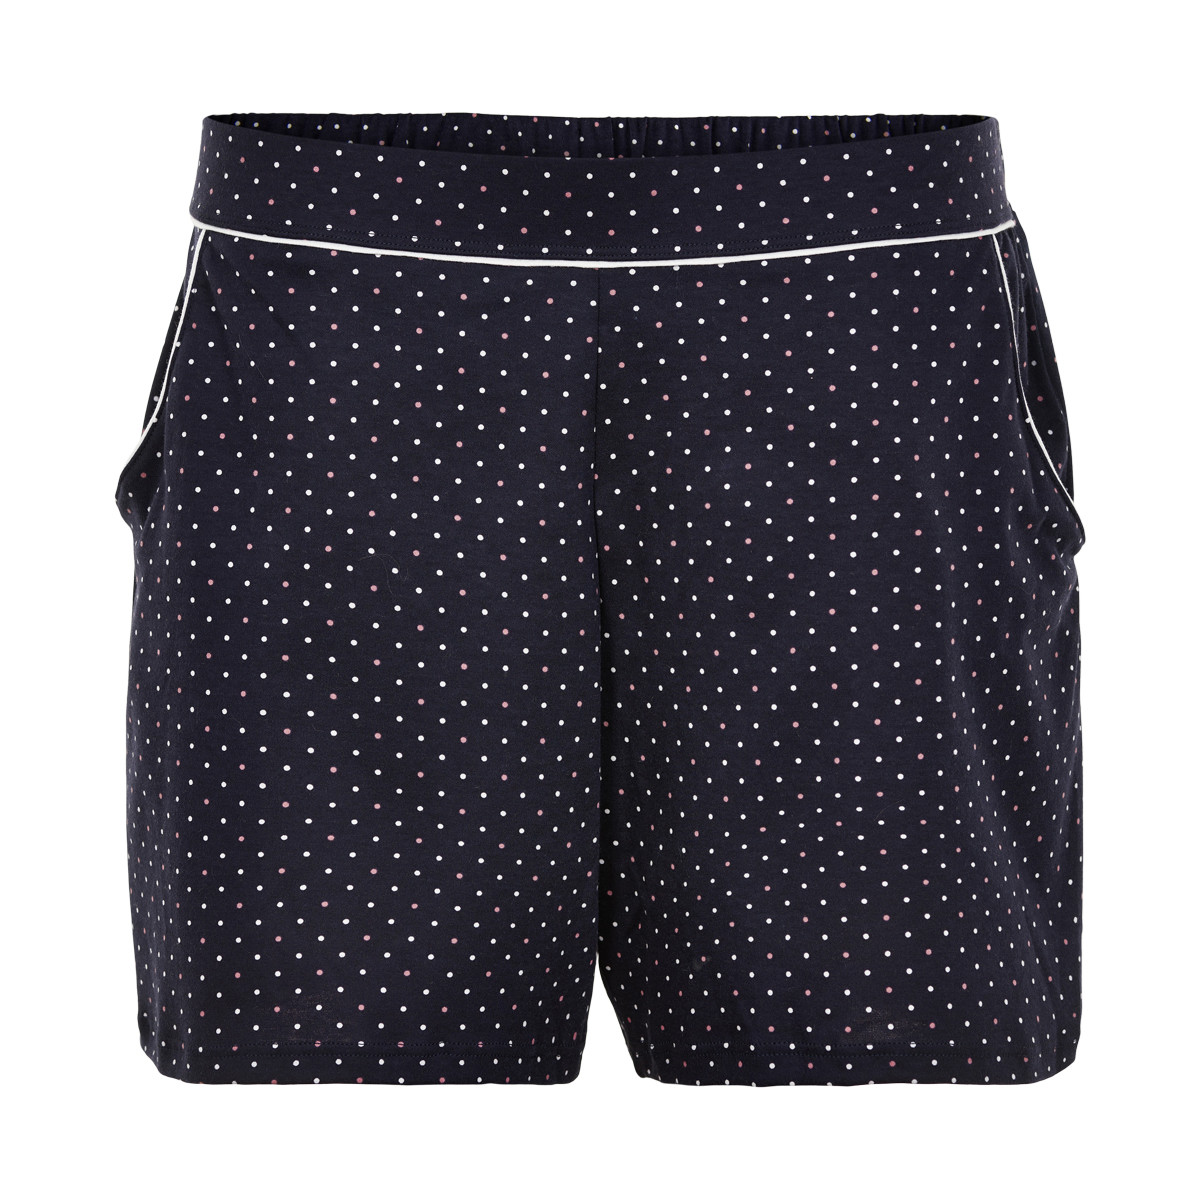 #3 - Calida Shorts, Farve: Sort, Størrelse: L, Dame